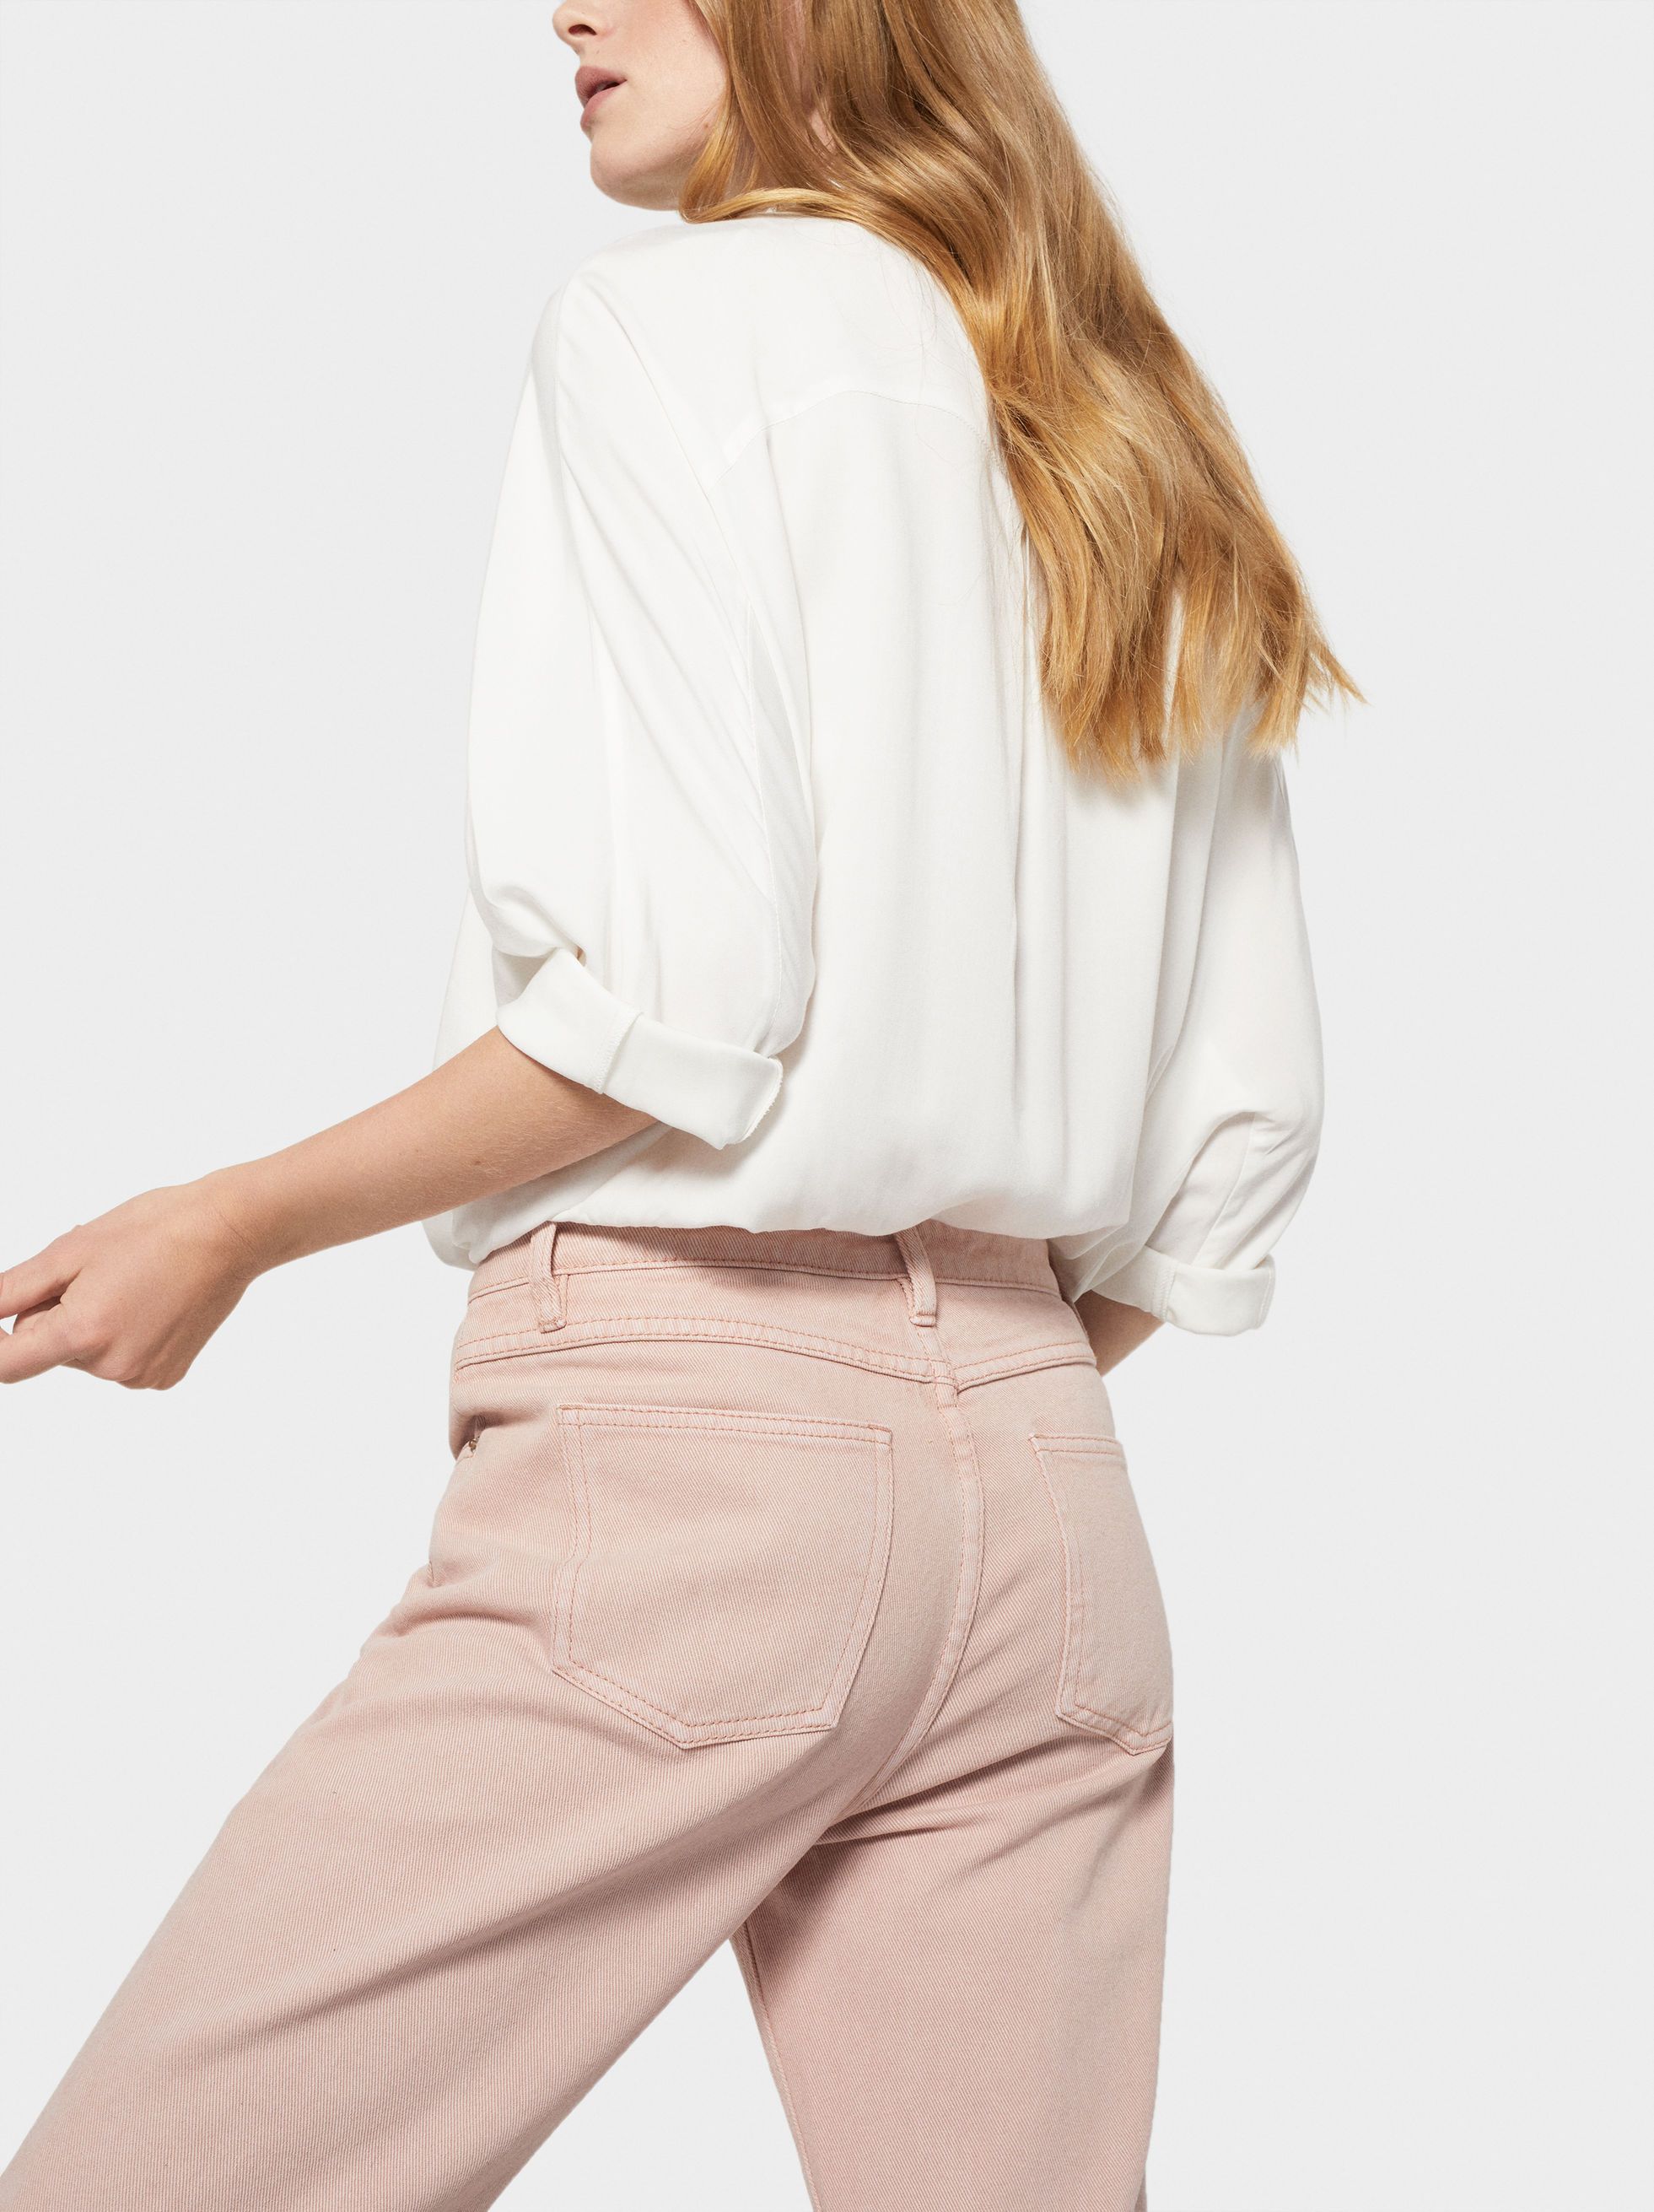 El pantalón vaquero rosa está en Parfois y es el más vendido